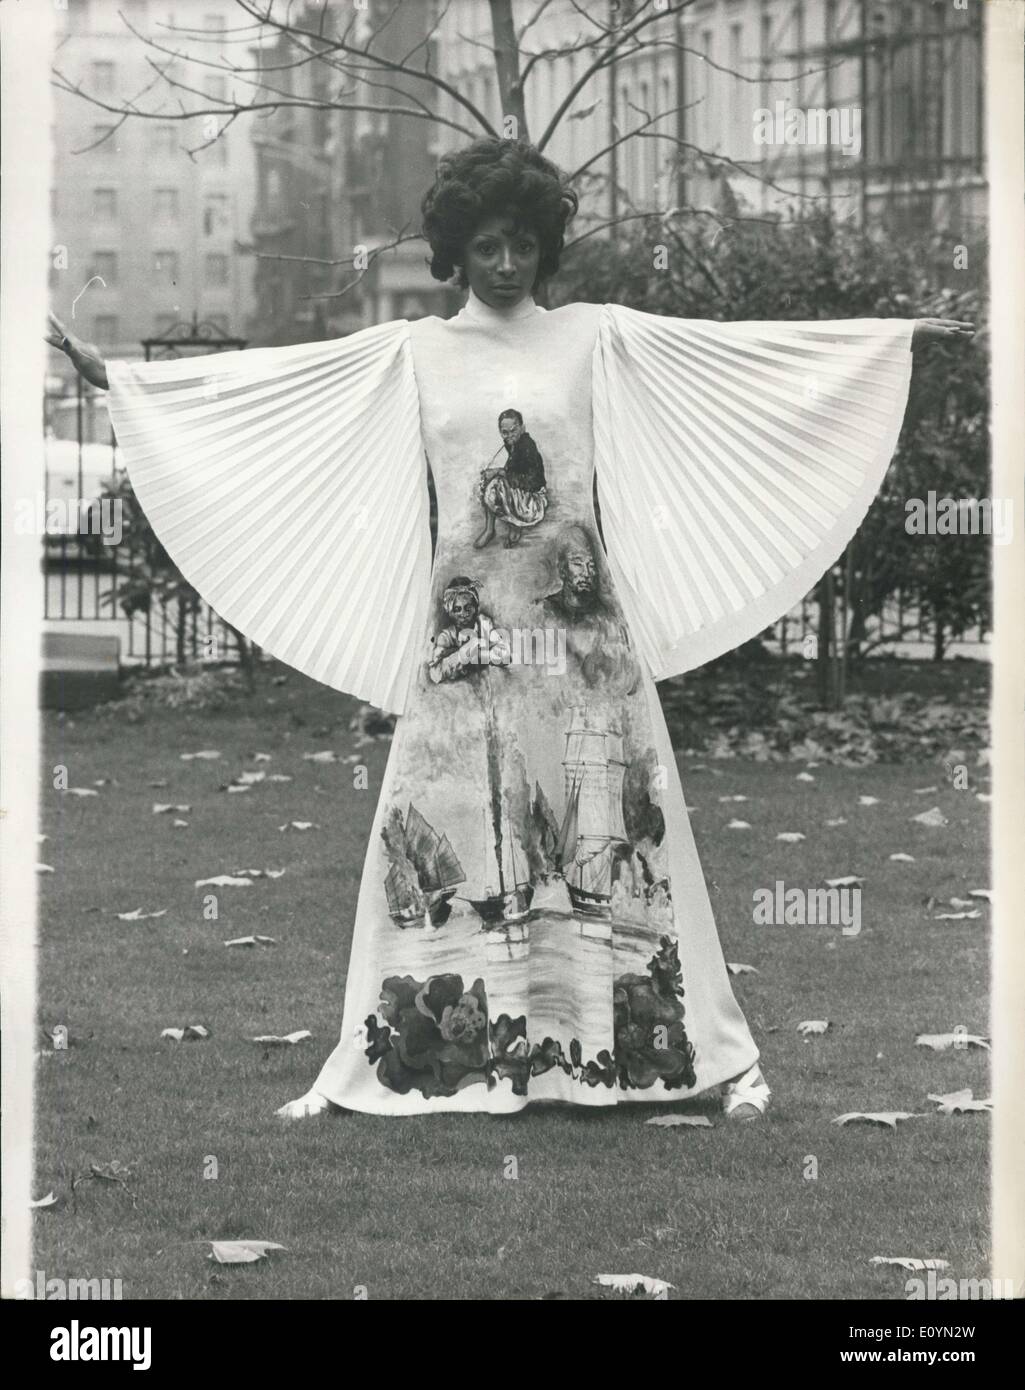 Le 10 novembre 1970 - Fashion Show à Londres : Exquisite Knitwear Ltd., et Tricot-France S.A., toutes deux filiales de Courtauld Ltd., amd grands fabricants de tissus de Jersey, a déclaré aujourd'hui un défilé de mode mixte à Celanese, Maison Hanove - Square, de présenter leurs gammes d'automne 1971. Modèle photo montre l'Enid porte 'Croisière Méditerranée" - en Tricel jersey double imprimé de tissu robe de soirée. Banque D'Images